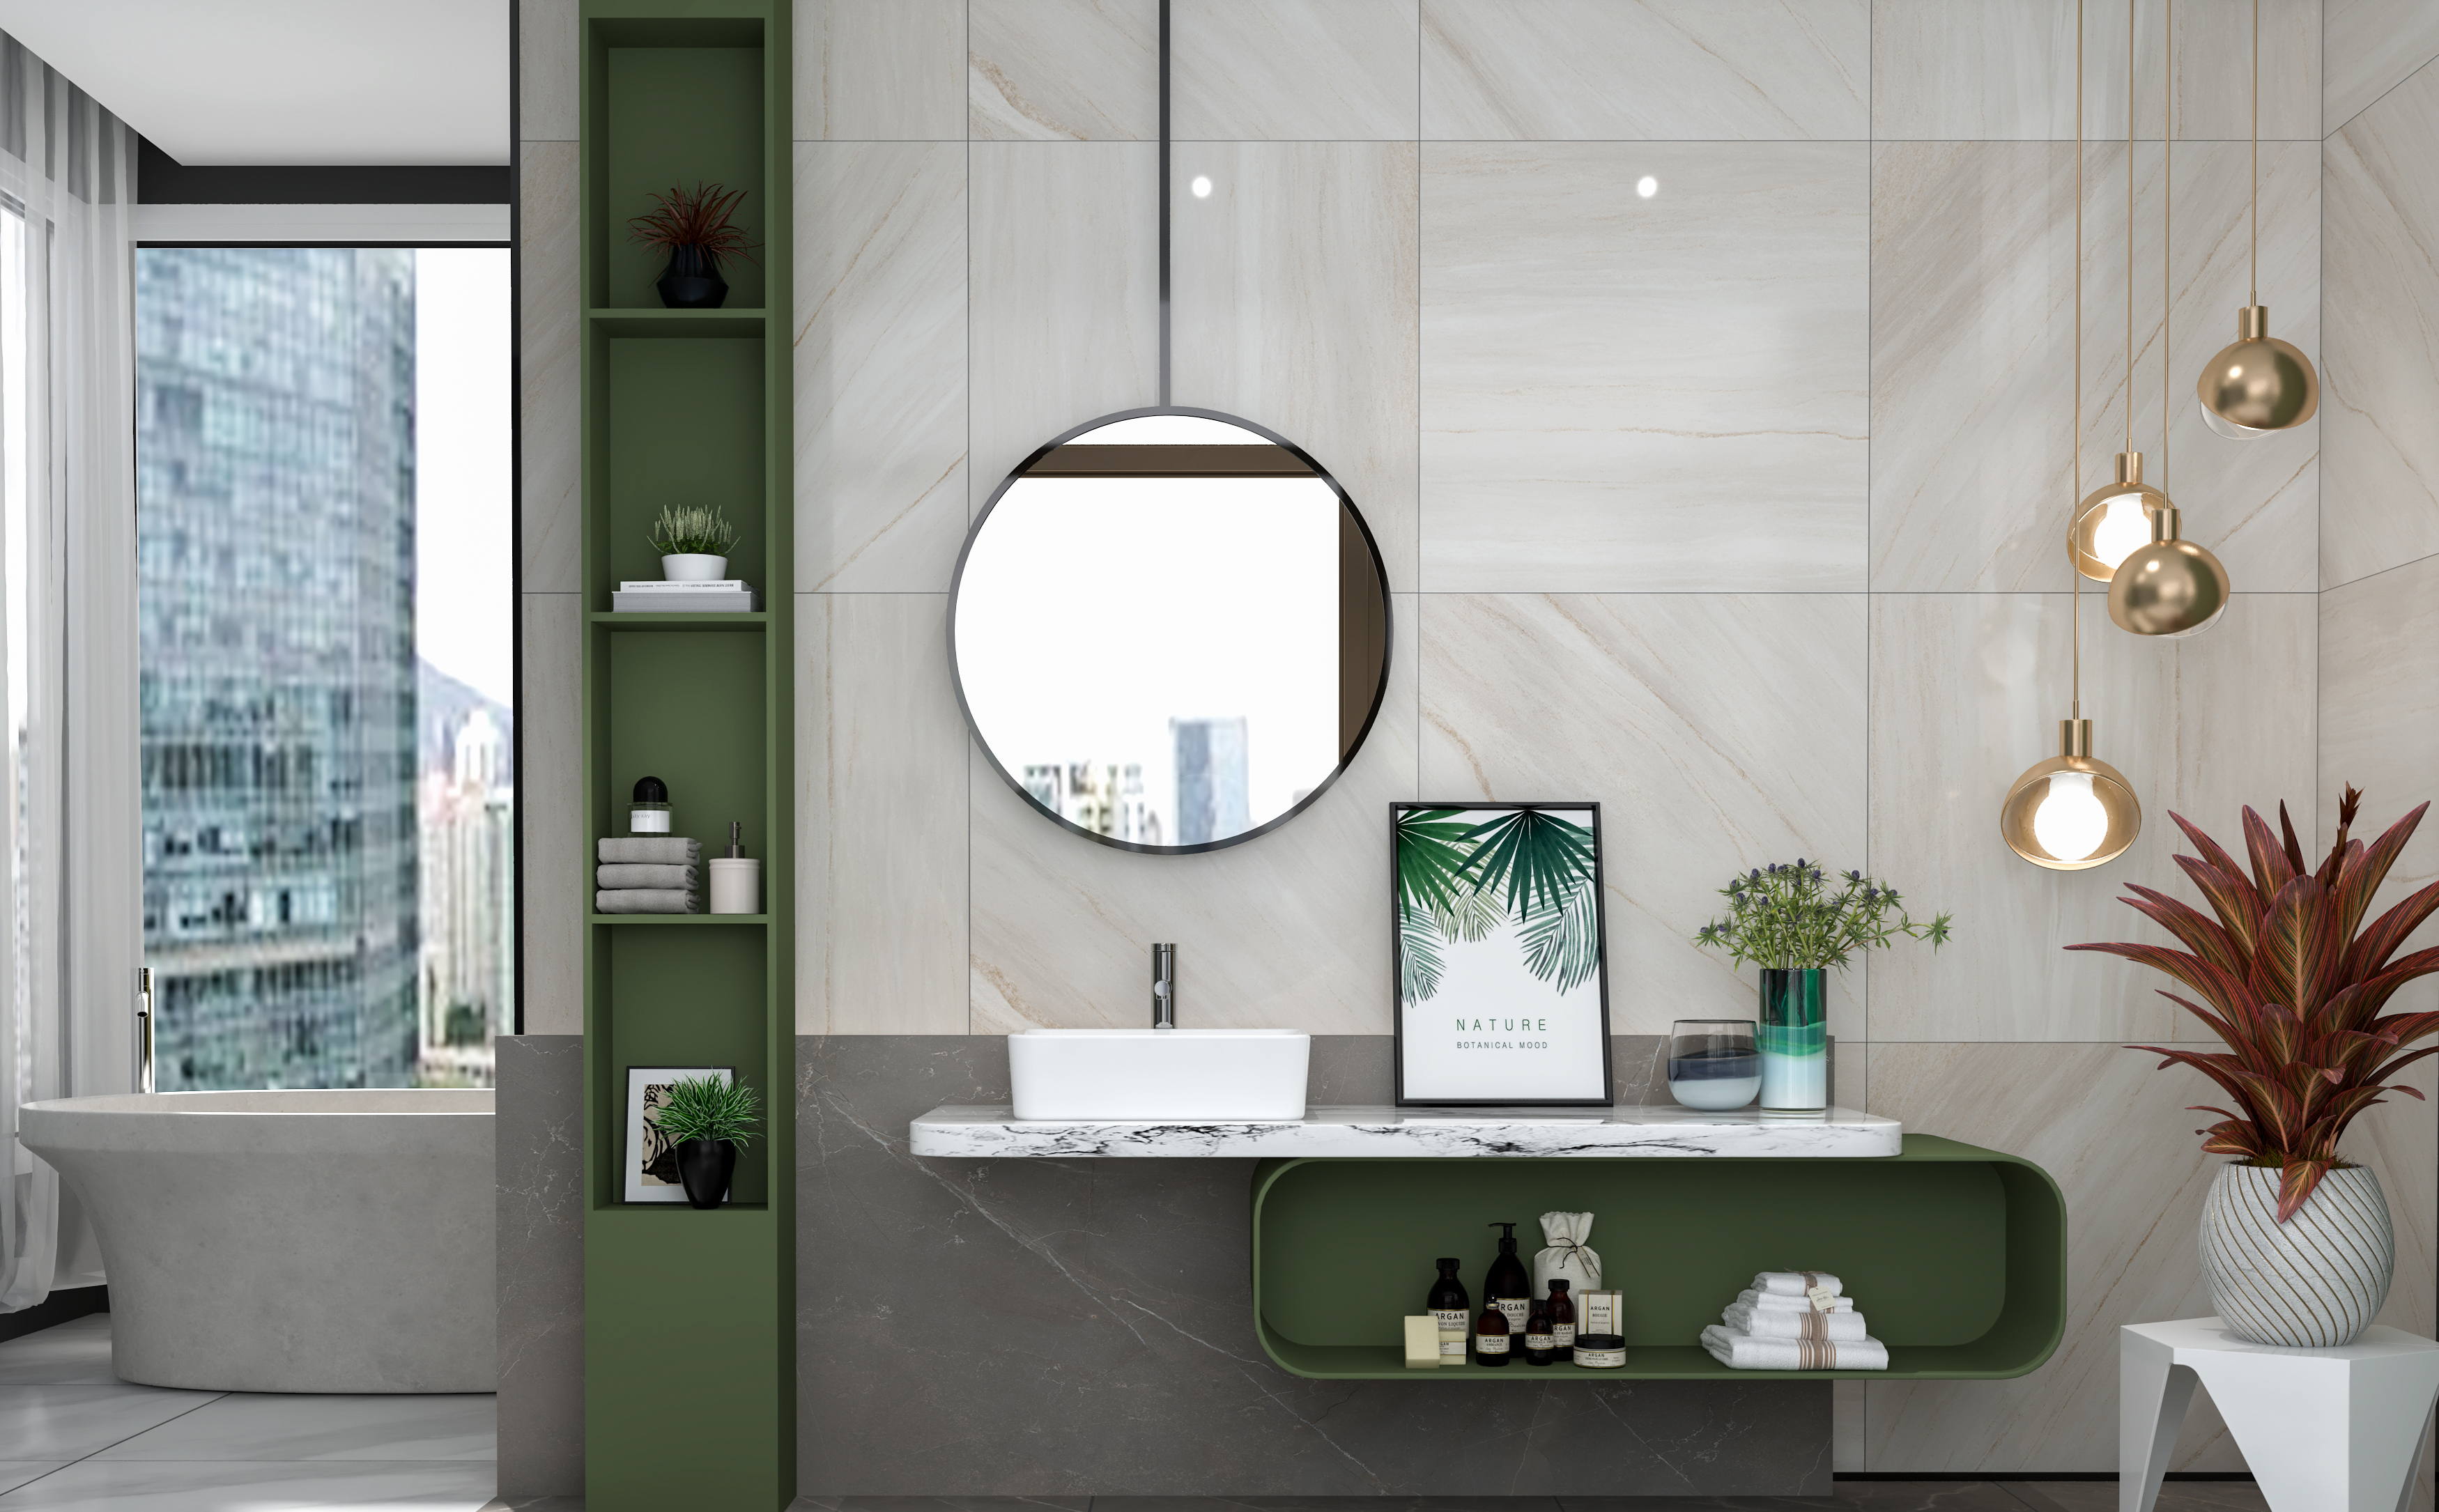 MEJE Lavabo-vasque de salle de bain 19 × 15 pouces, lavabo rectangulaire blanc au-dessus du comptoir, bassin d'art en céramique de porcelaine, lavabo pour meuble-lavabo